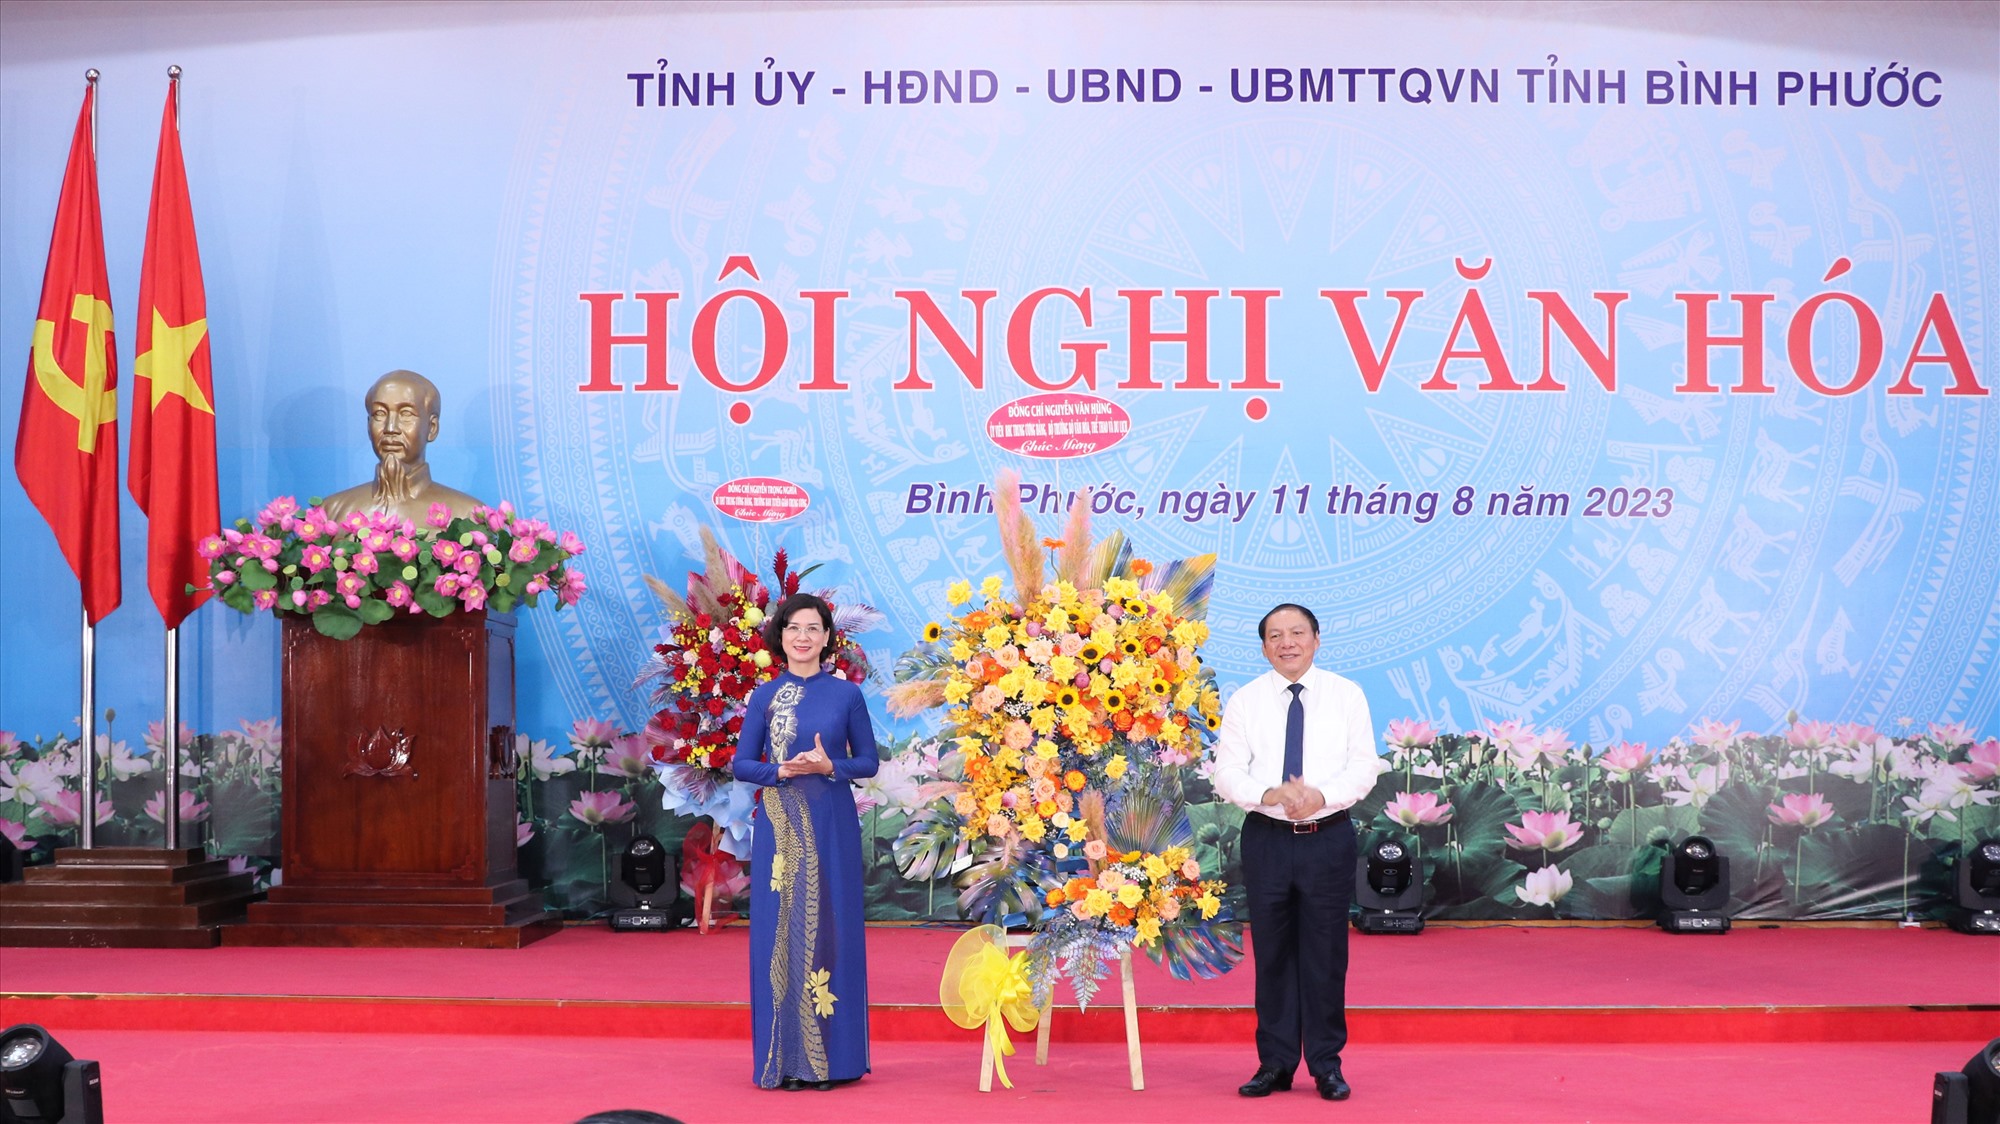  Bộ trưởng Bộ Văn hóa - Thể thao và Du lịch Nguyễn Văn Hùng tặng hoa chúc mừng tỉnh Bình Phước.Ảnh: Dương Bình